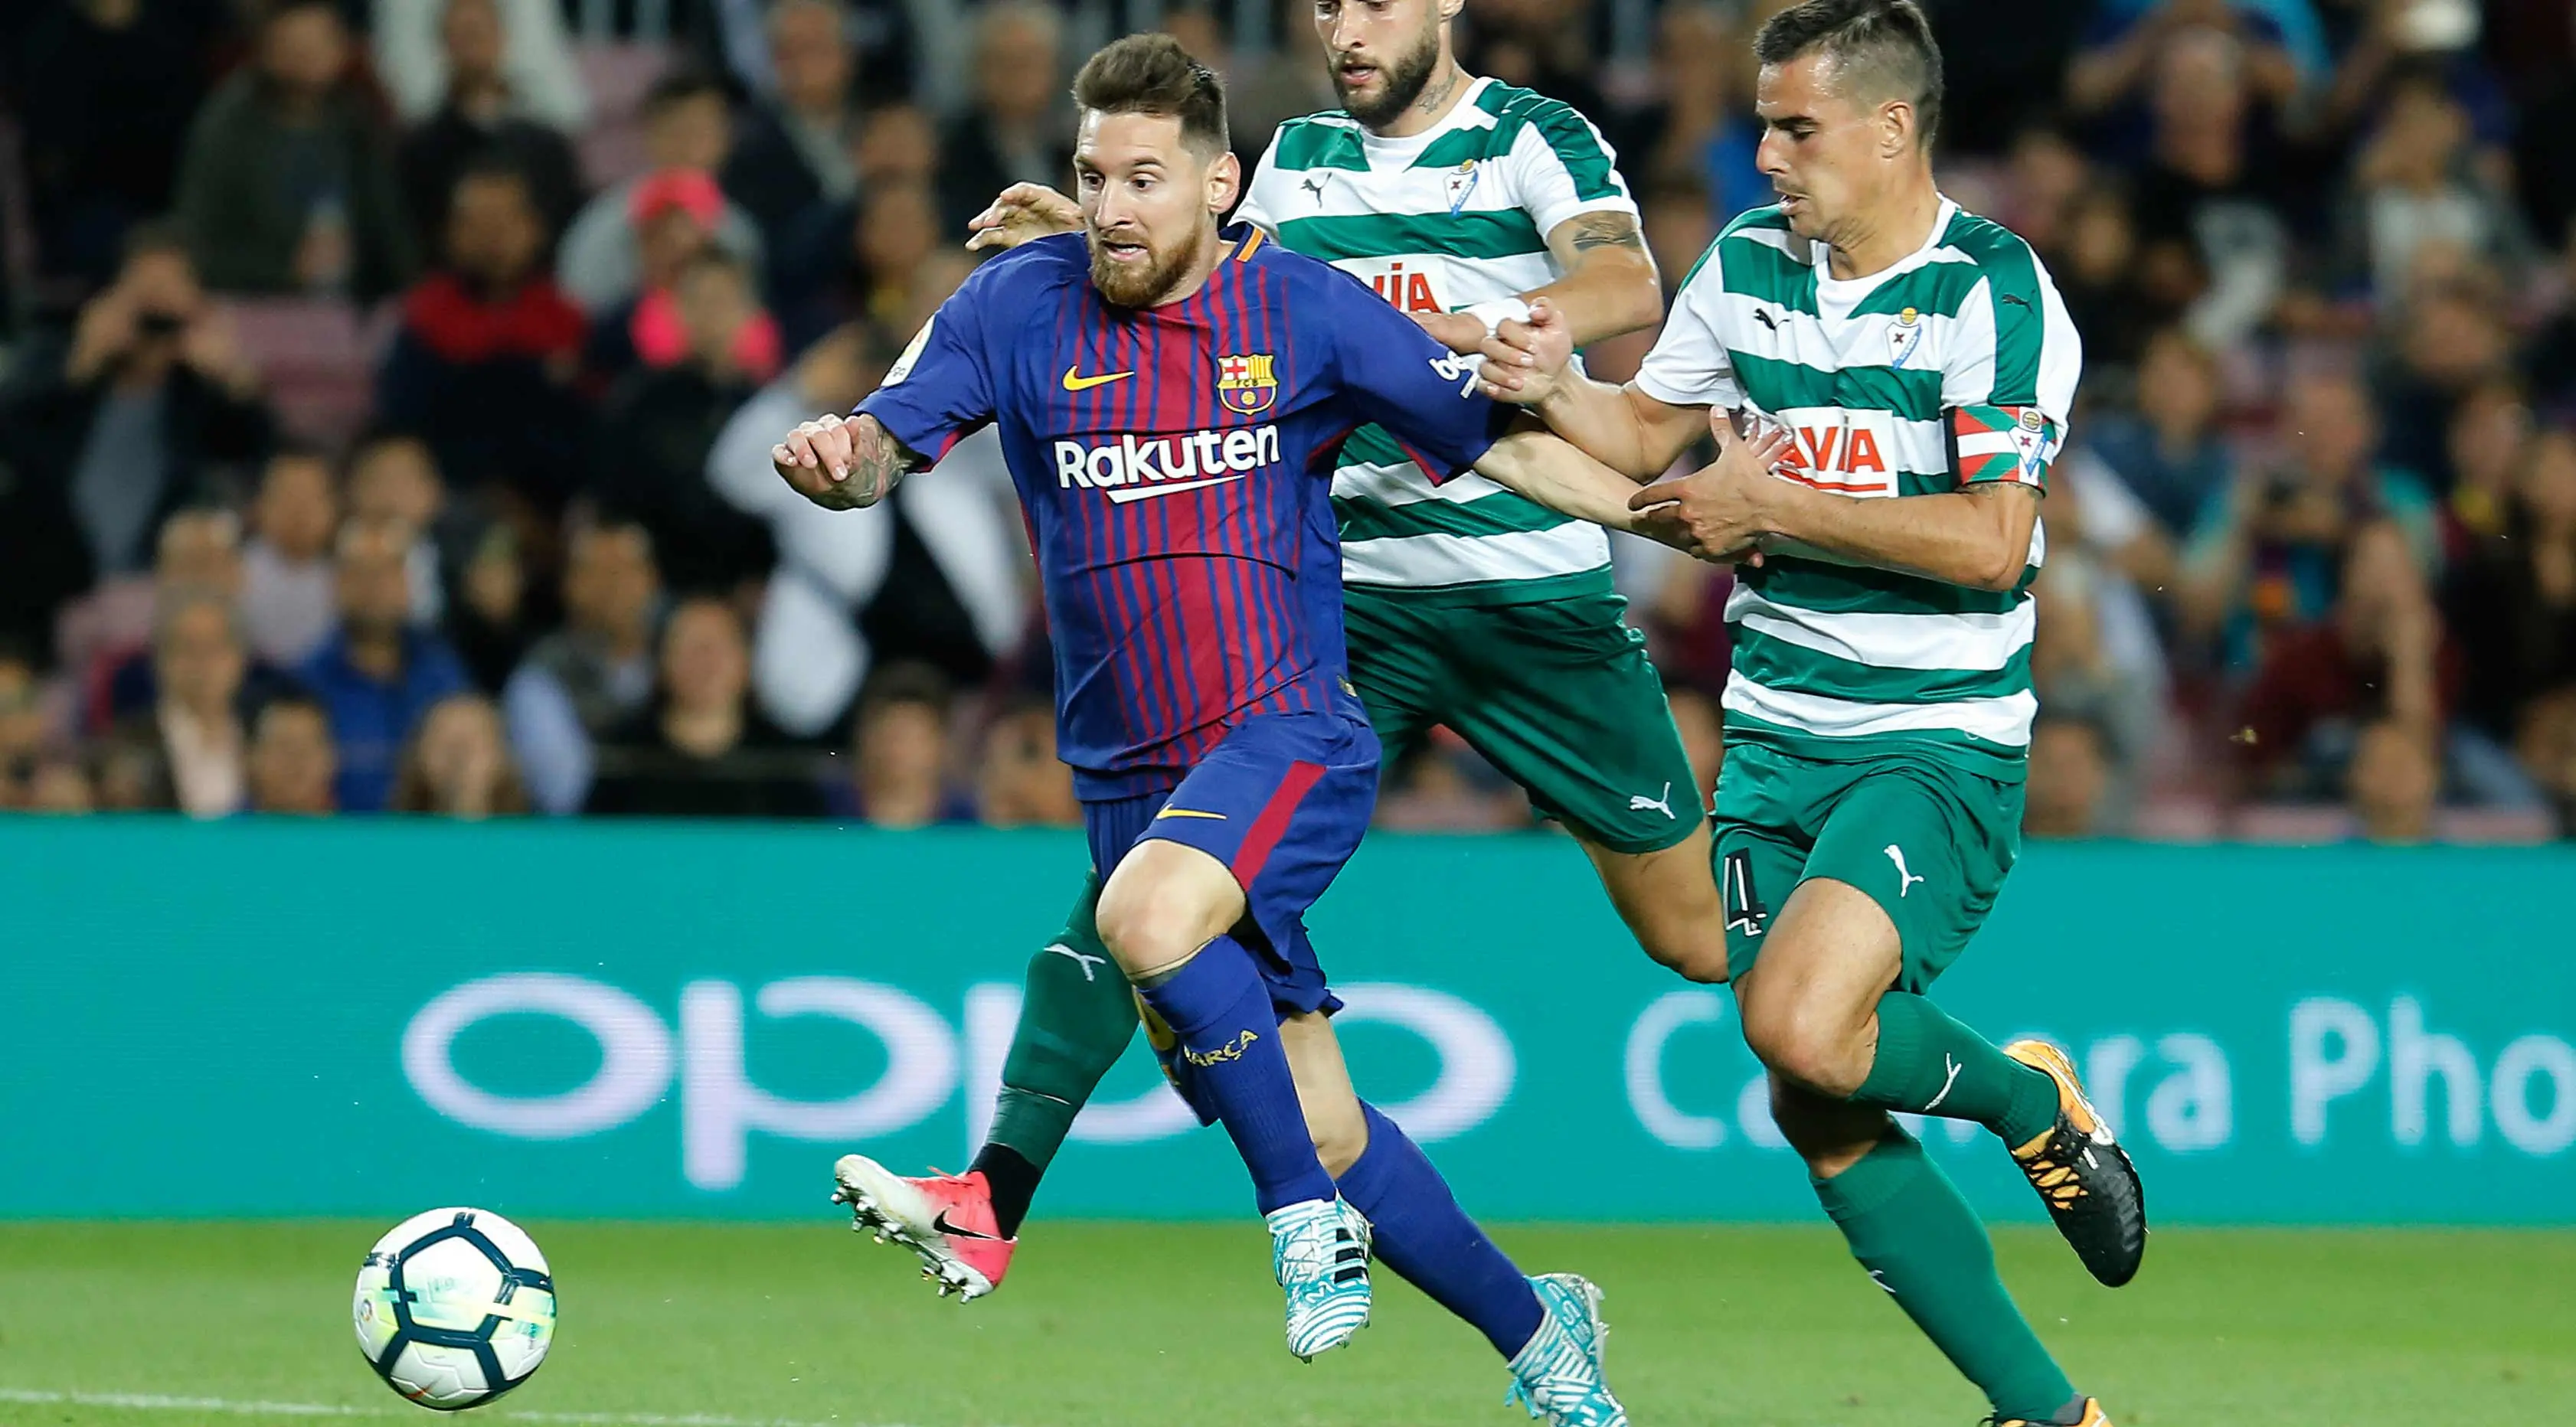 Aksi Lionel Messi saat membawa dari kejaran pemain Eibar pada pertandingan La Liga Spanyol di stadion Camp Nou di Barcelona, Spanyol, (19/9). Barcelona menang telak 6-1 atas SD Eibar. (AFP Photo/Pau Barrena)